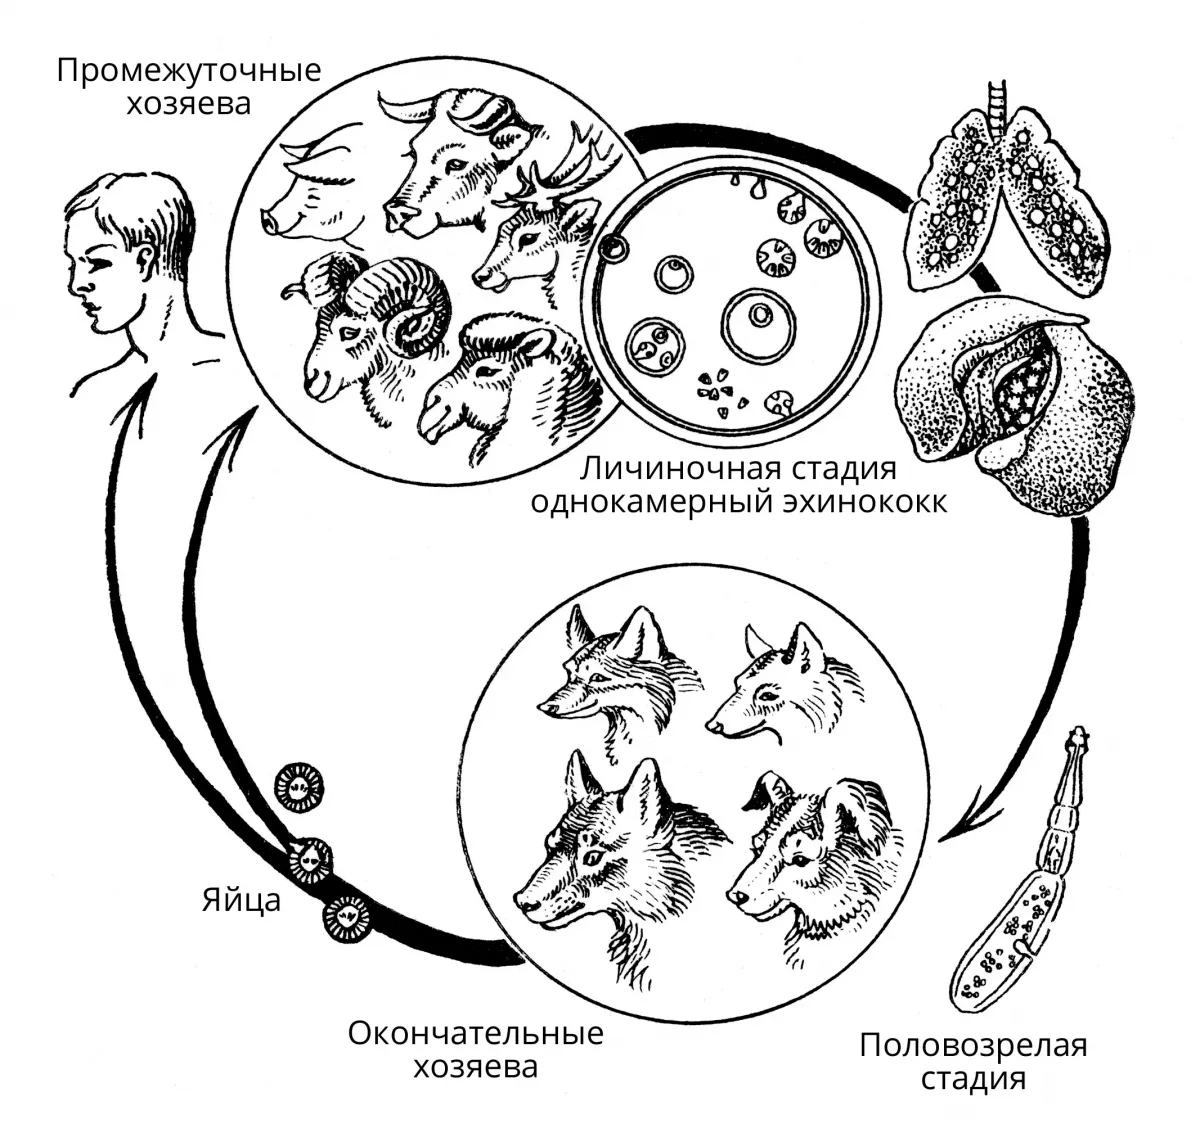 Можно ли считать человека промежуточным хозяином эхинококка. Личиночная стадия эхинококка. Эхинококк промежуточный хозяин. Цикл развития эхинококка. Echinococcus granulosus промежуточный хозяин.